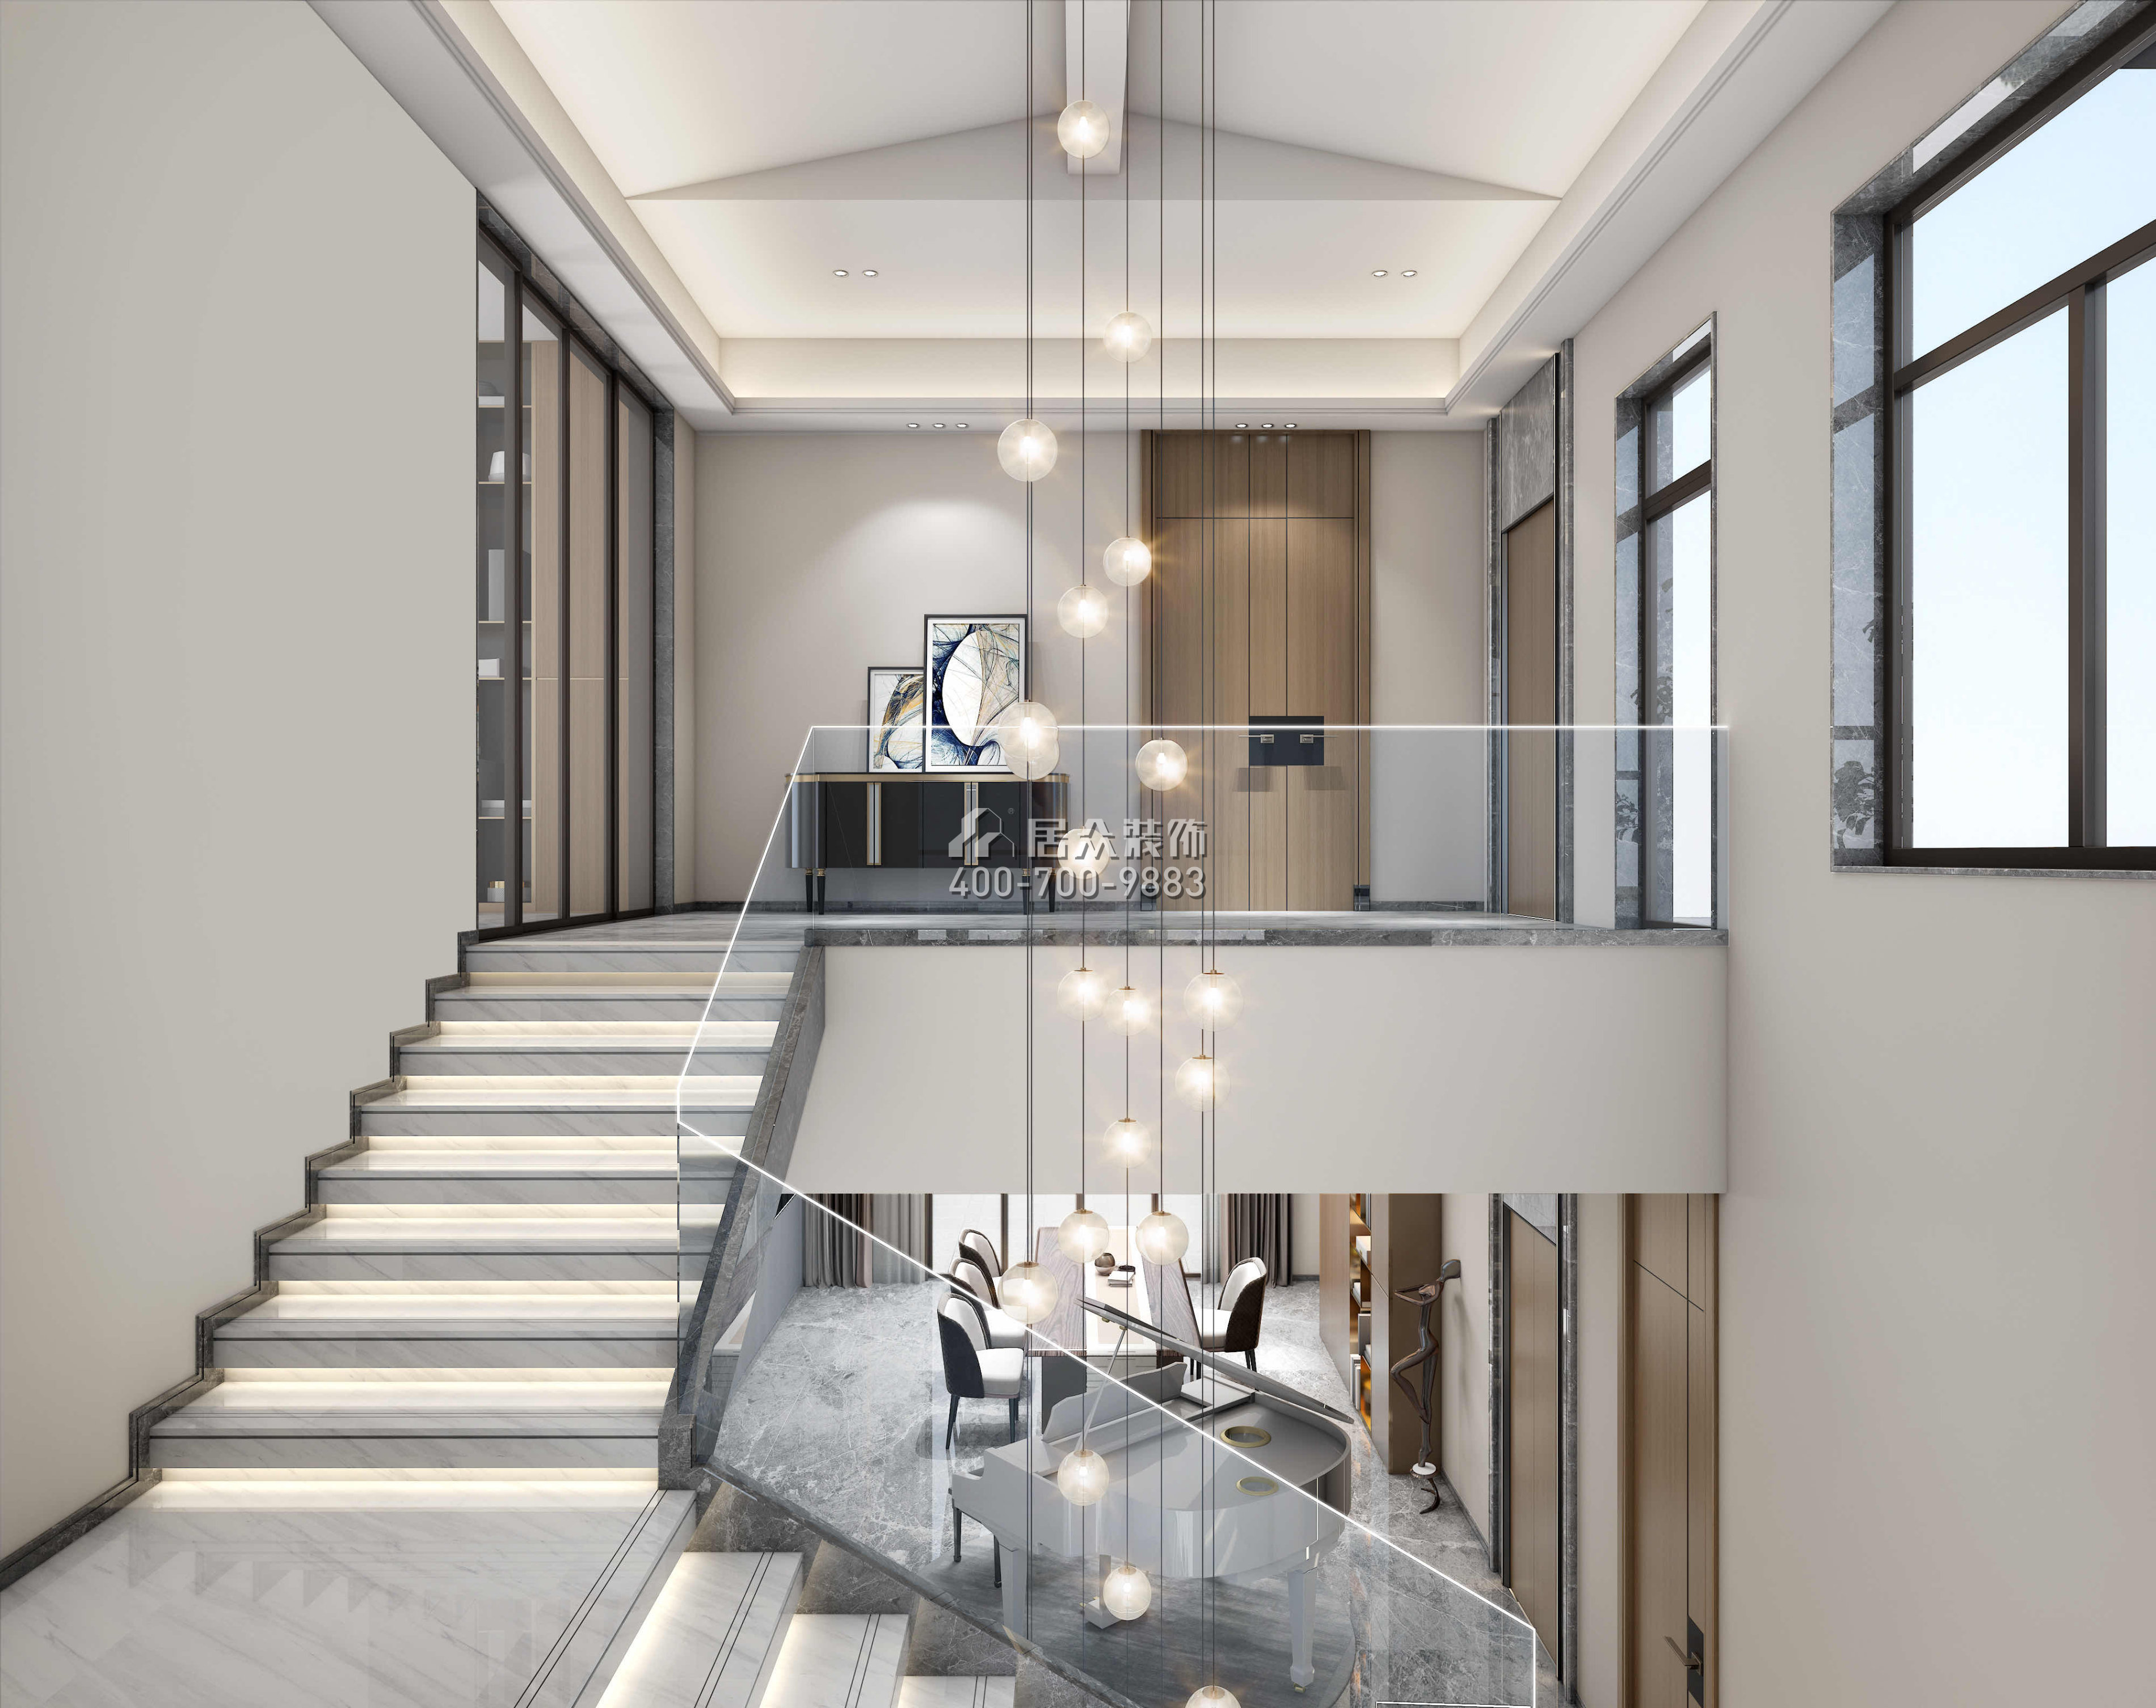 觀園800平方米現代簡約風格別墅戶型樓梯裝修效果圖